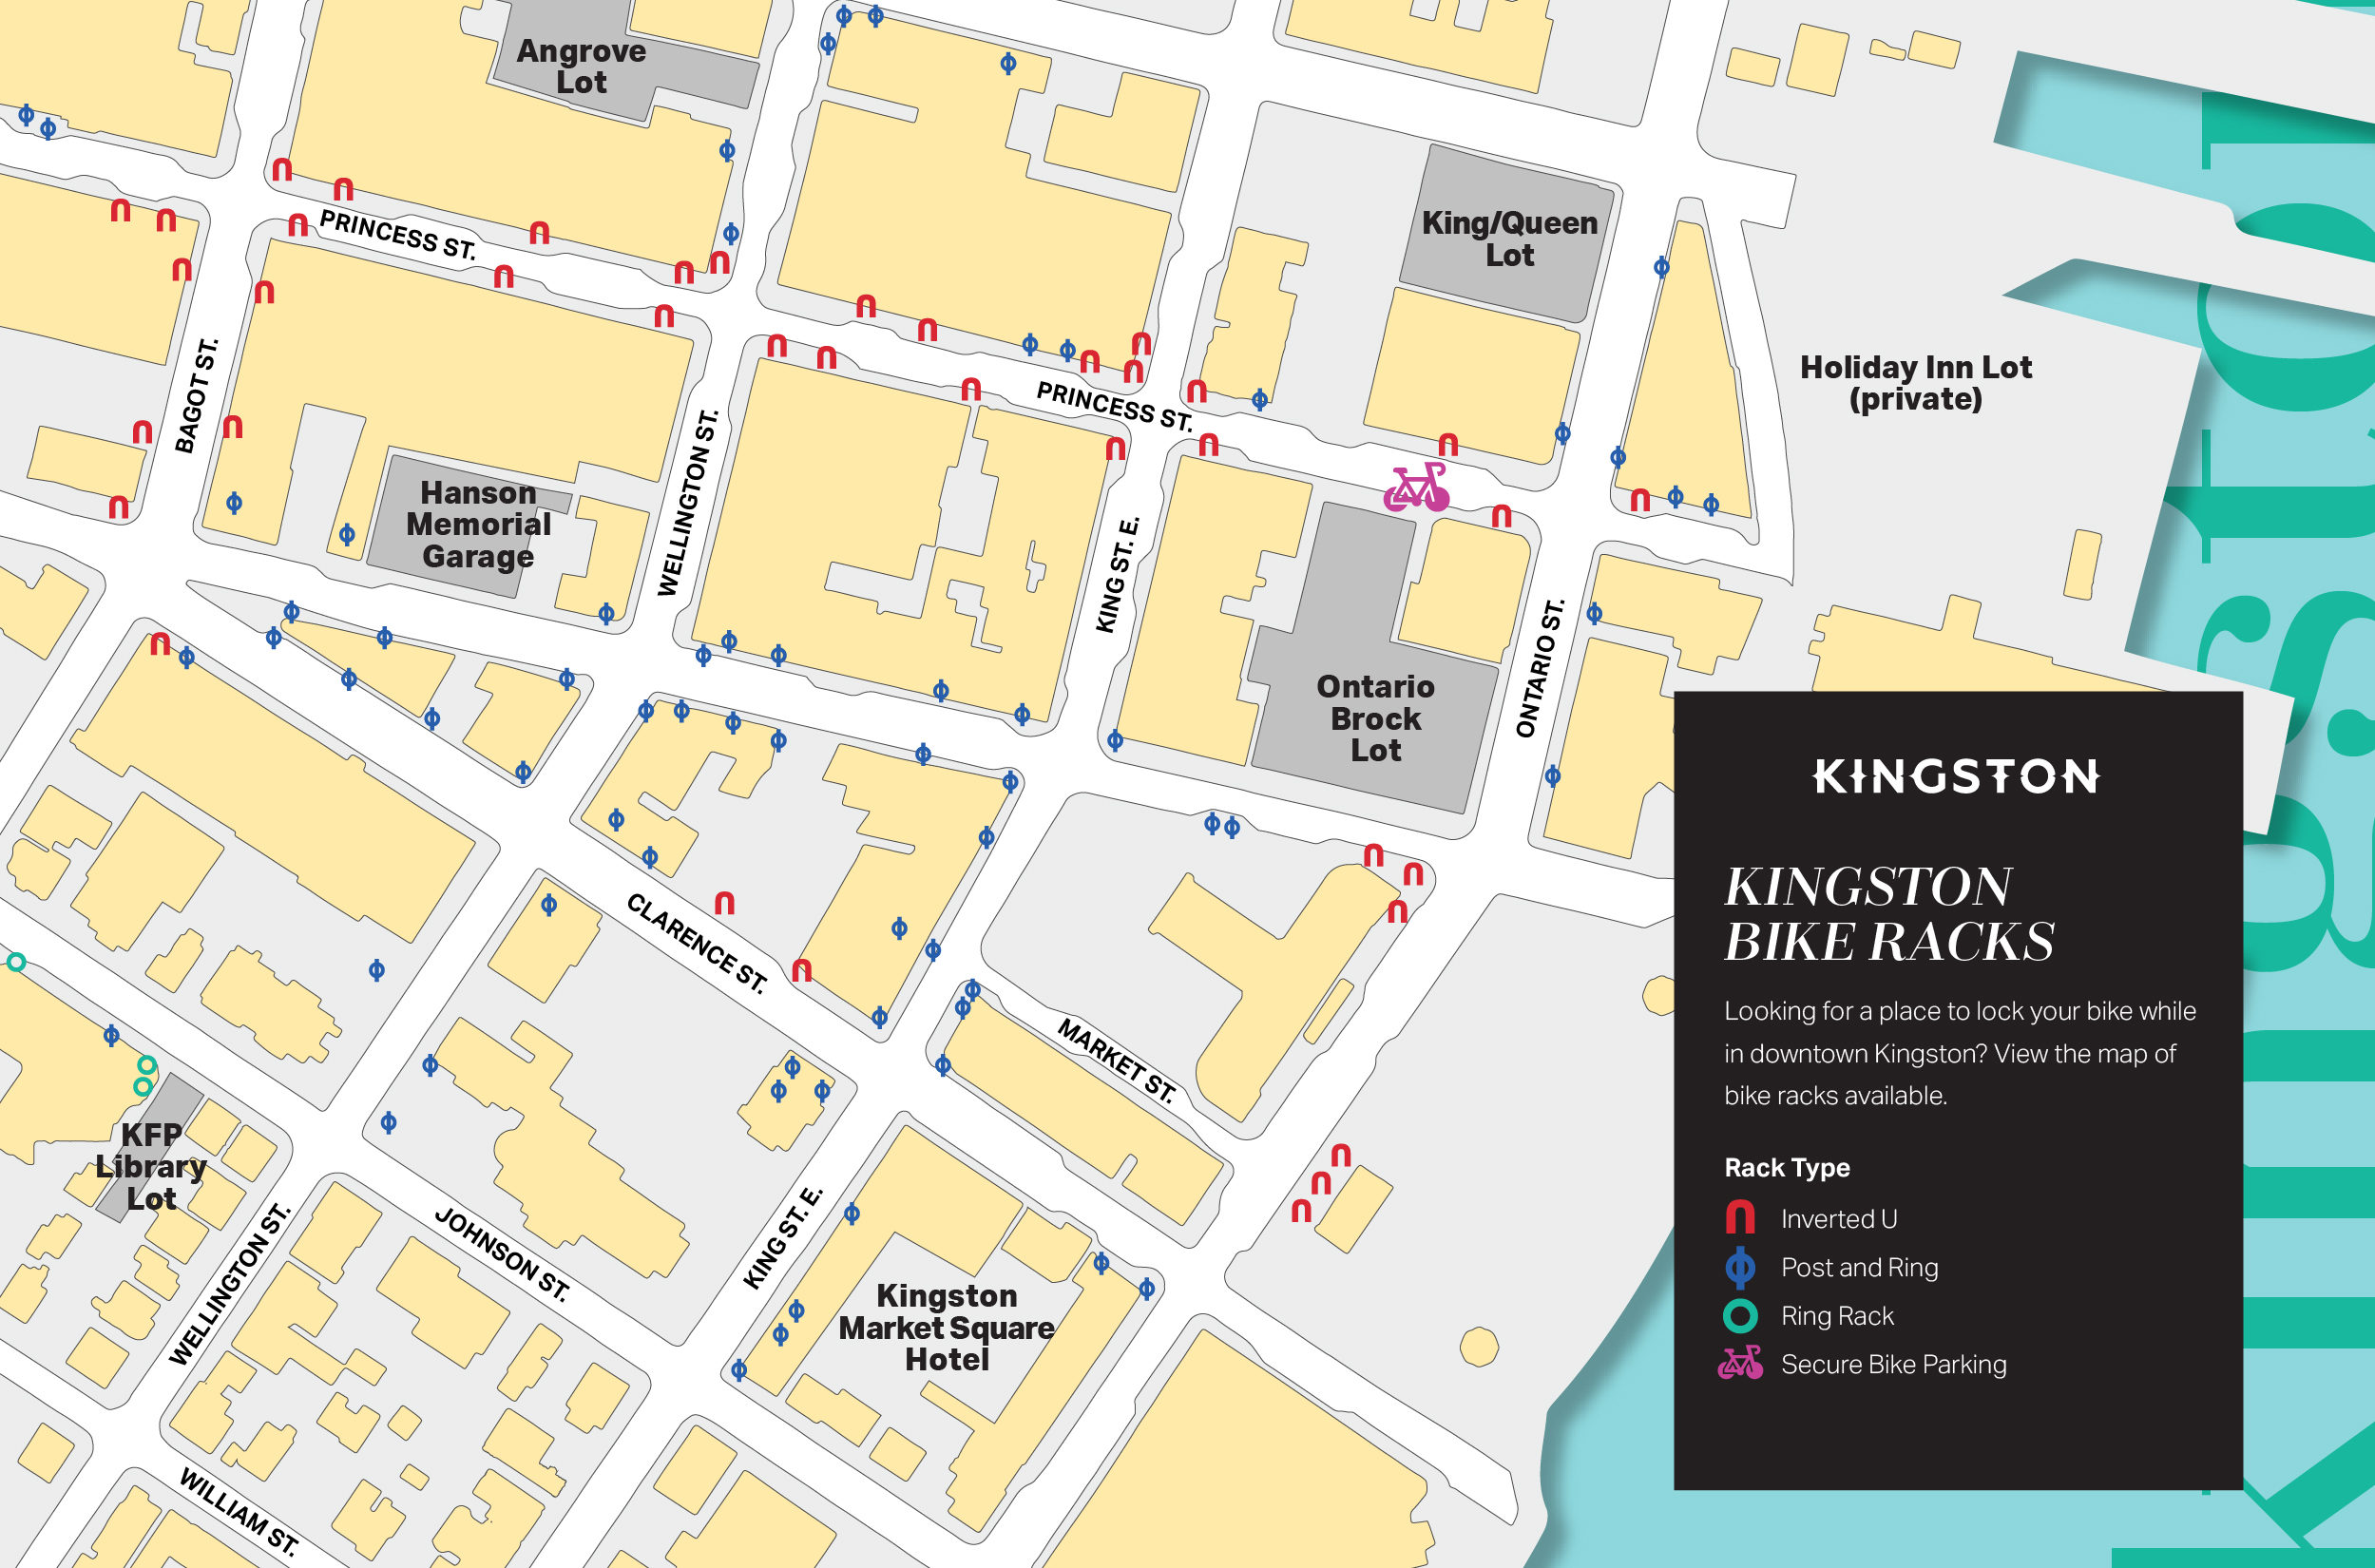 Downtown Kingston bike racks map